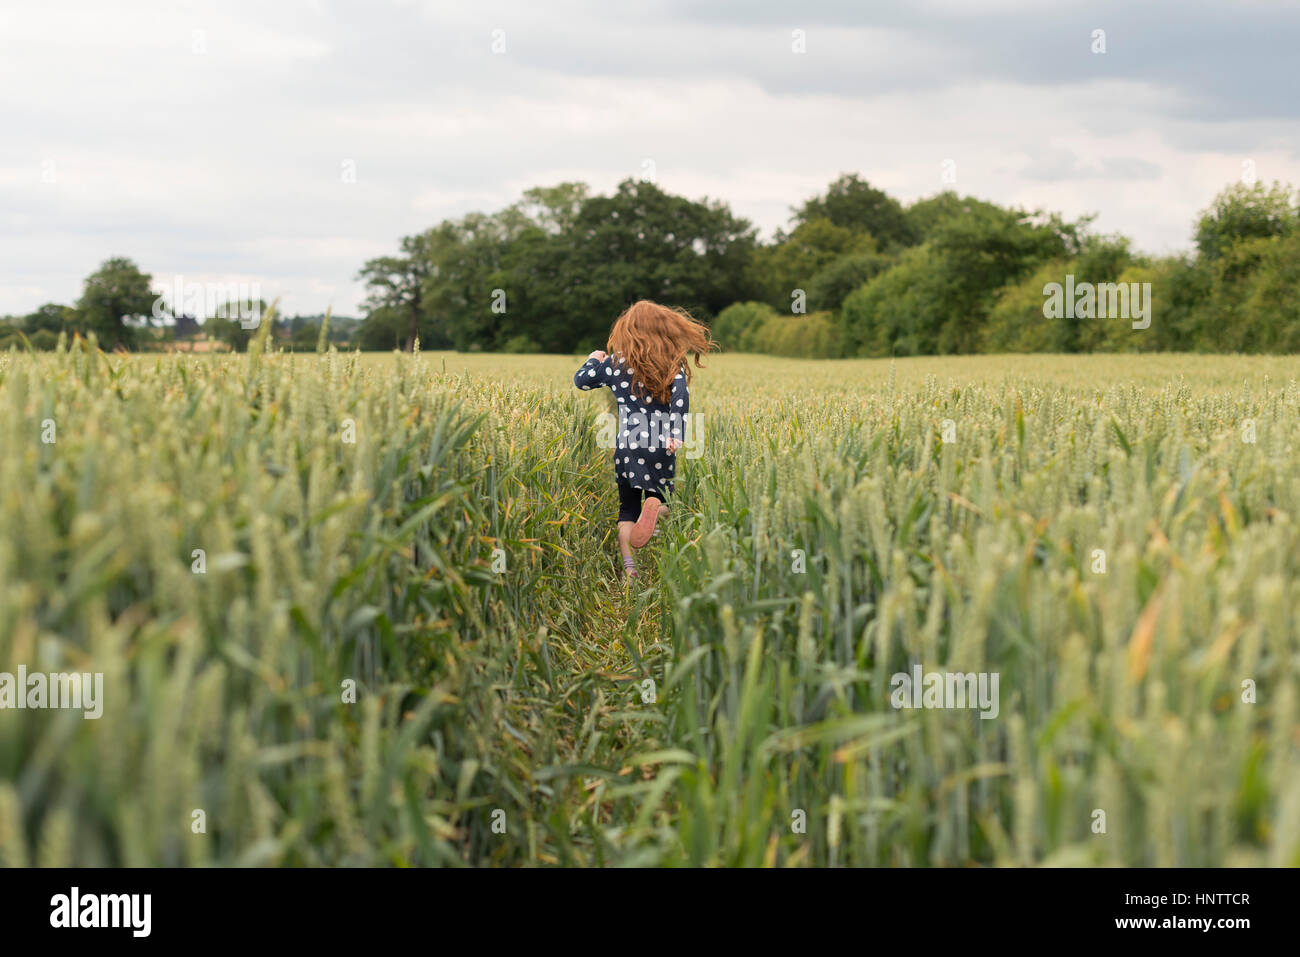 Ein kleines Mädchen mit roten Haaren läuft durch ein Weizenfeld. Stockfoto